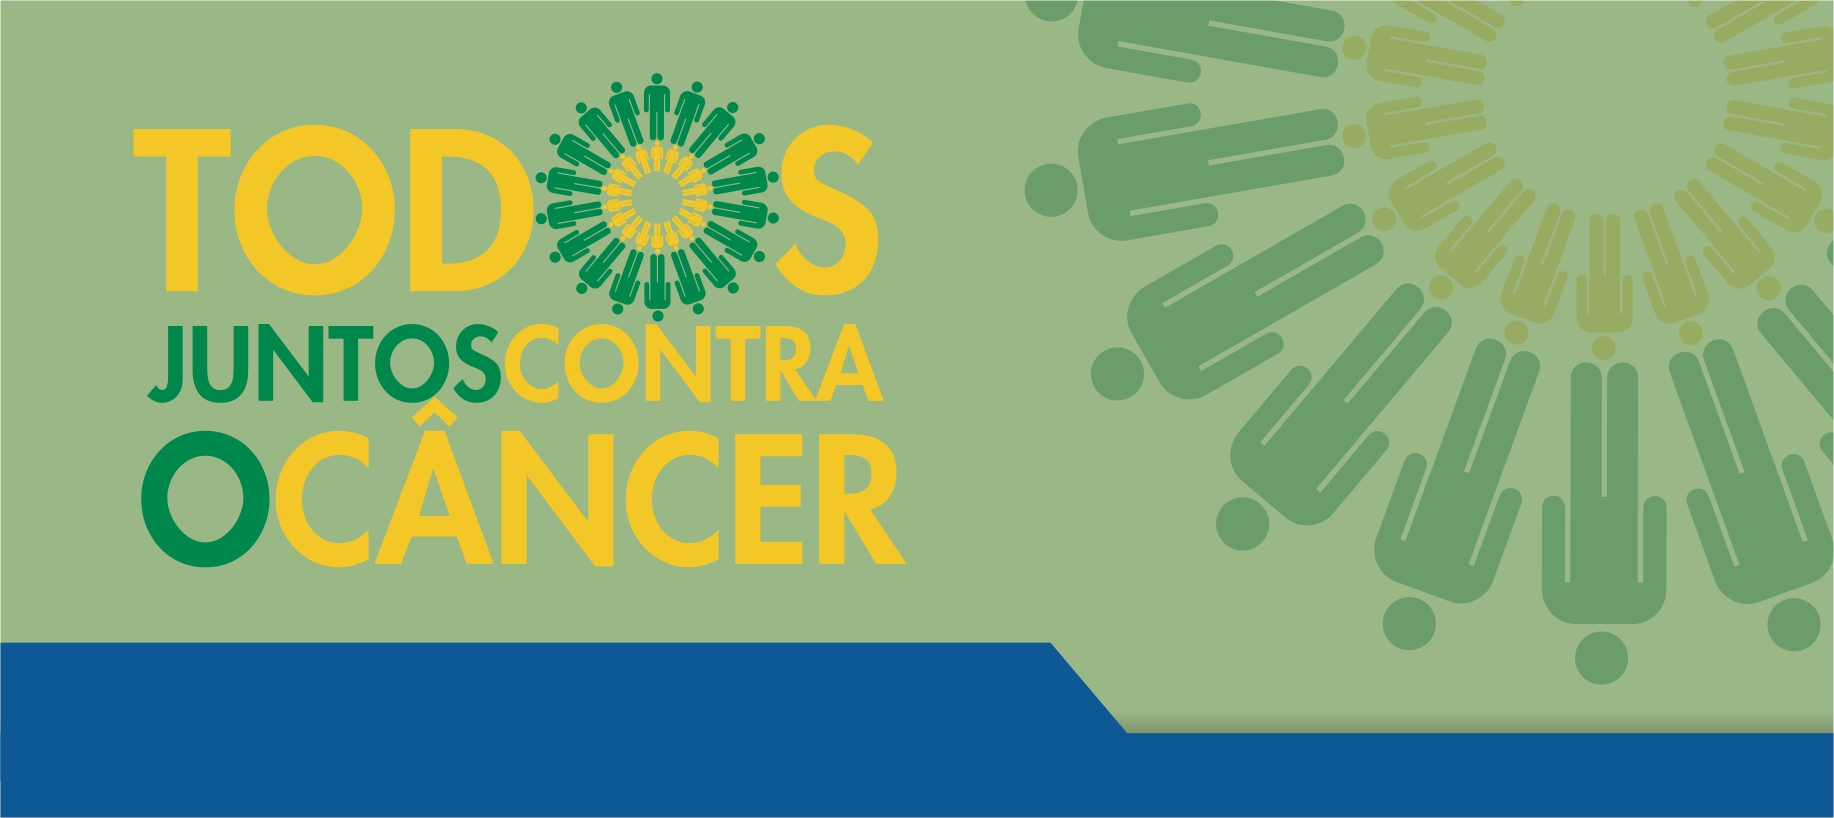 8º Congresso Digital Todos Juntos Contra o Câncer contará com dois painéis do Centro de Oncologia e Hematologia Einstein